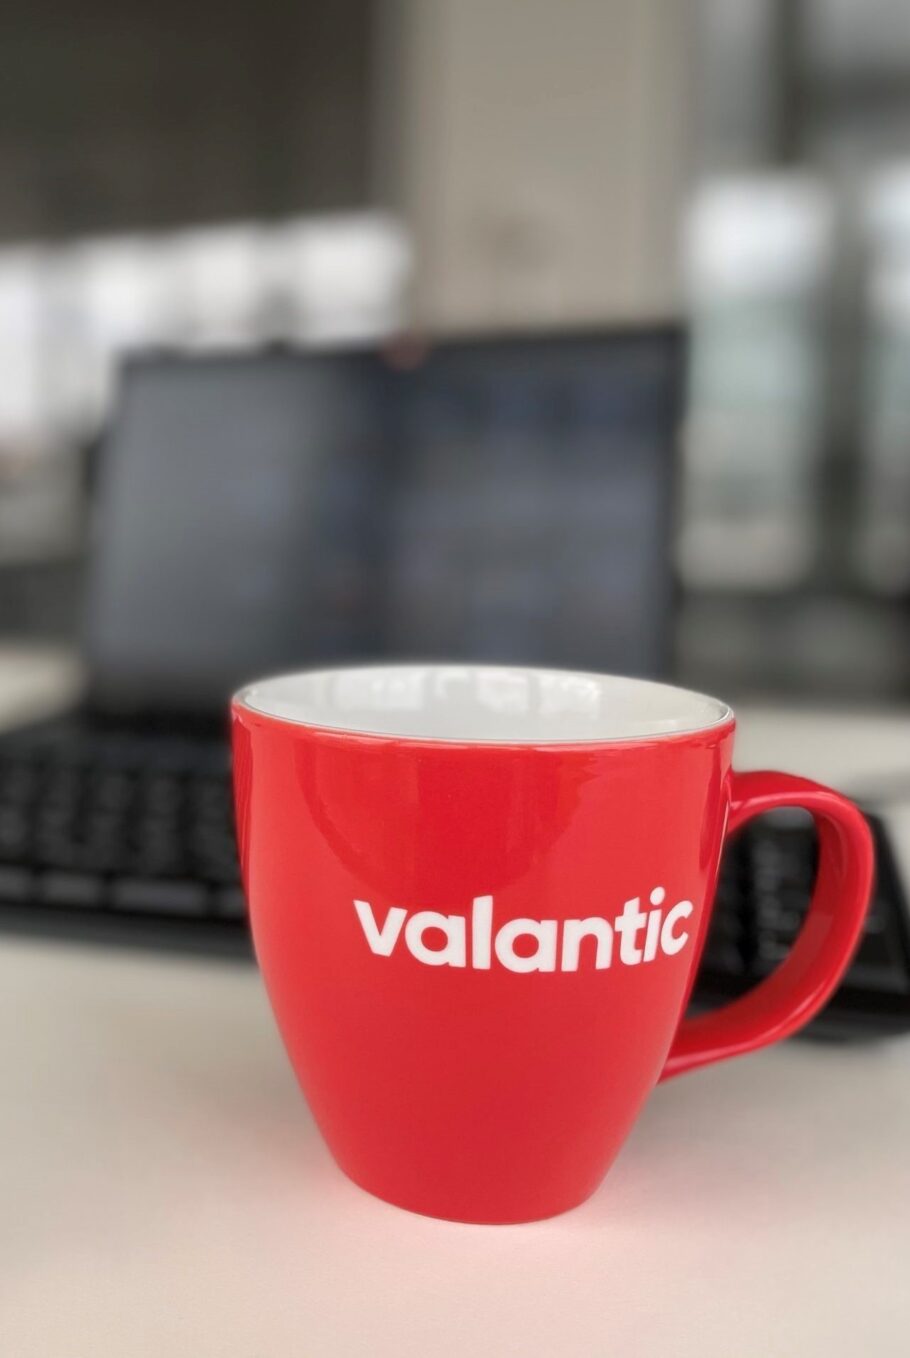 Bild von einer Tasse mit valantic Logo - Ihr Partner für die digitale Transformation